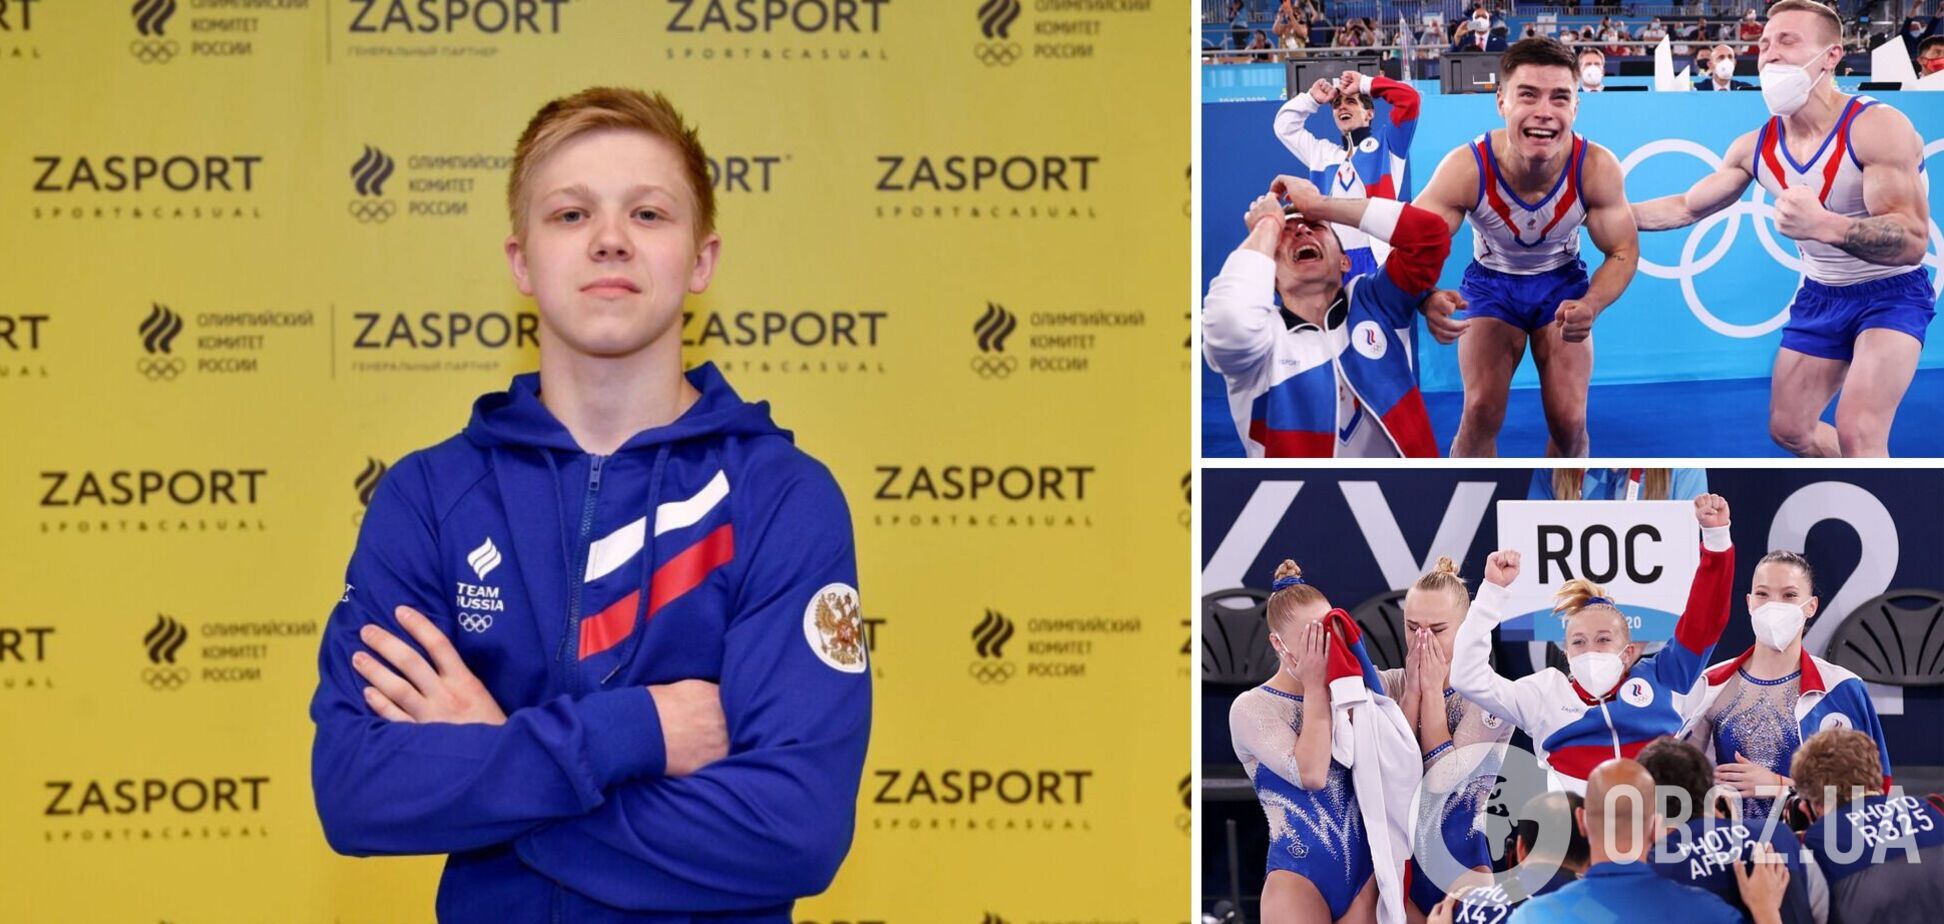 Очередная международная федерация вернула Россию в мировой спорт, 'чтобы не нарушать права ее граждан'